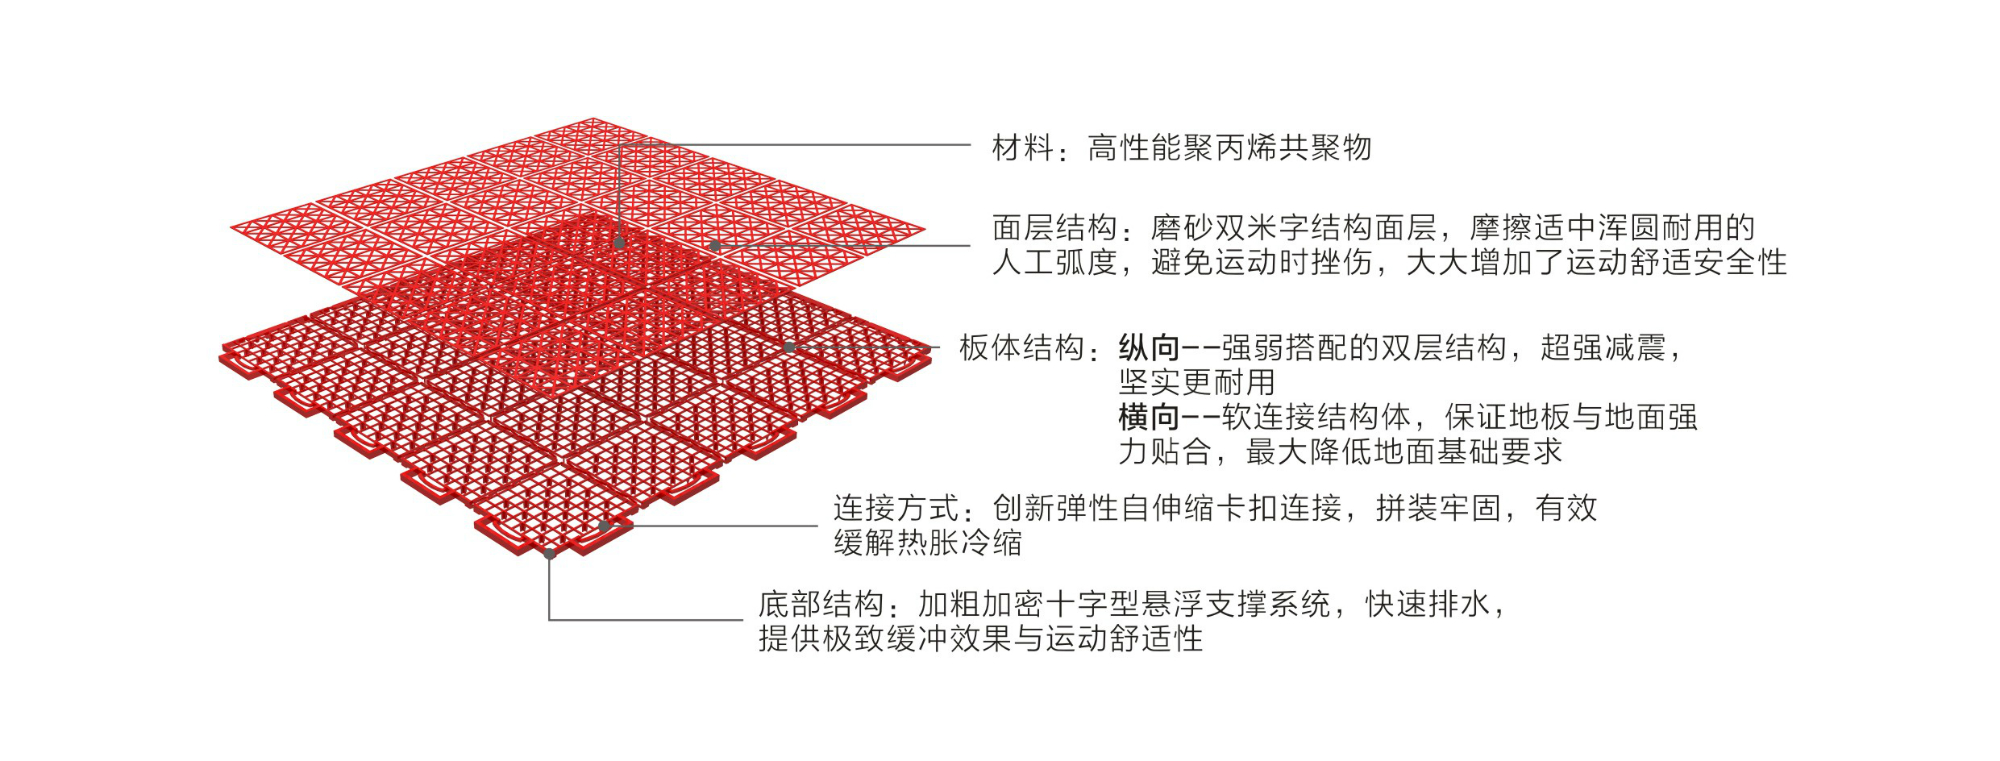 英利奥软连接二代悬浮式拼装地板——结构图